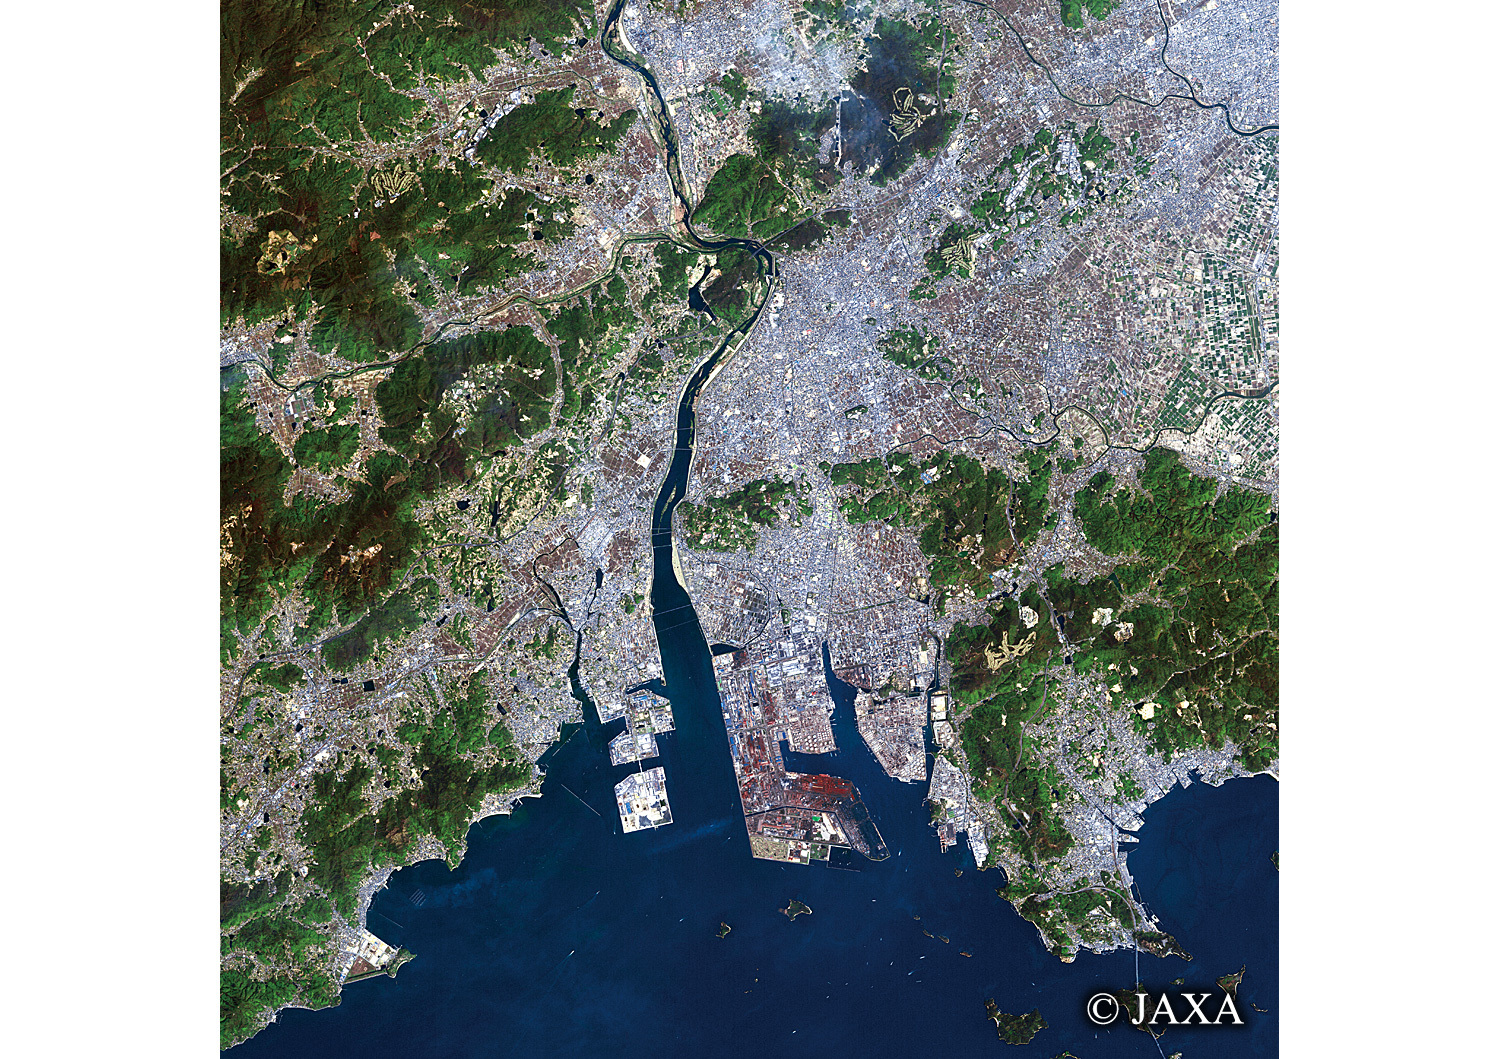 だいちから見た日本の都市 倉敷市:衛星画像